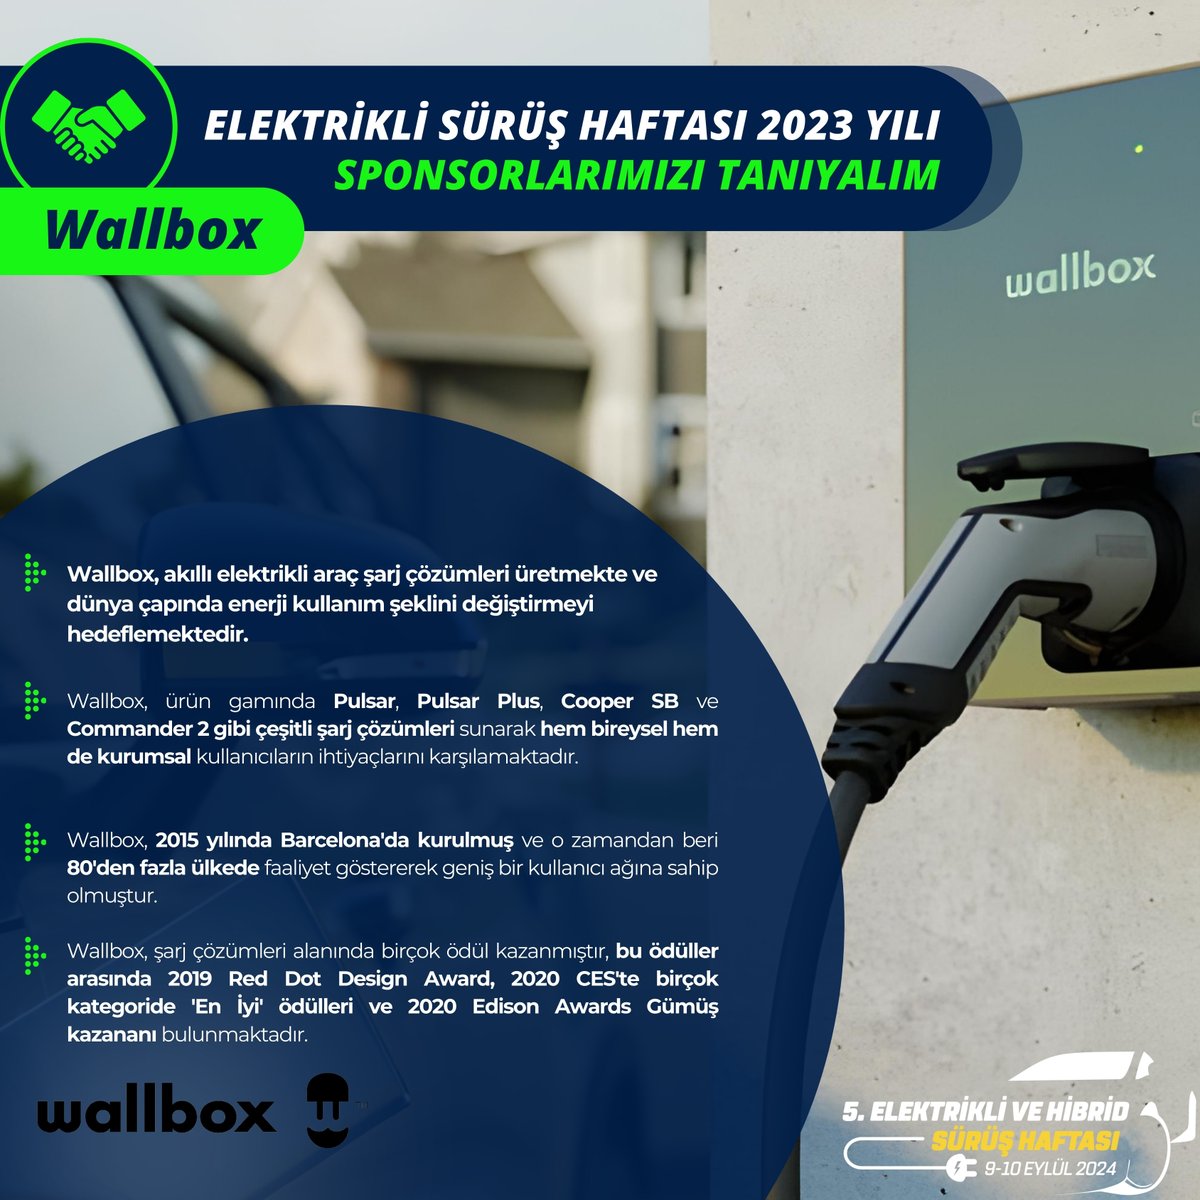 Wallbox, İspanya menşeili bir şirket olarak, akıllı elektrikli araç şarj çözümleri üretmekte ve dünya çapında enerji kullanım şeklini değiştirmeyi hedefliyor. @ehcars #elektriklisürüşhaftası #elektrikliaraba #electriccars #hybrid @wallboxchargers #wallbox